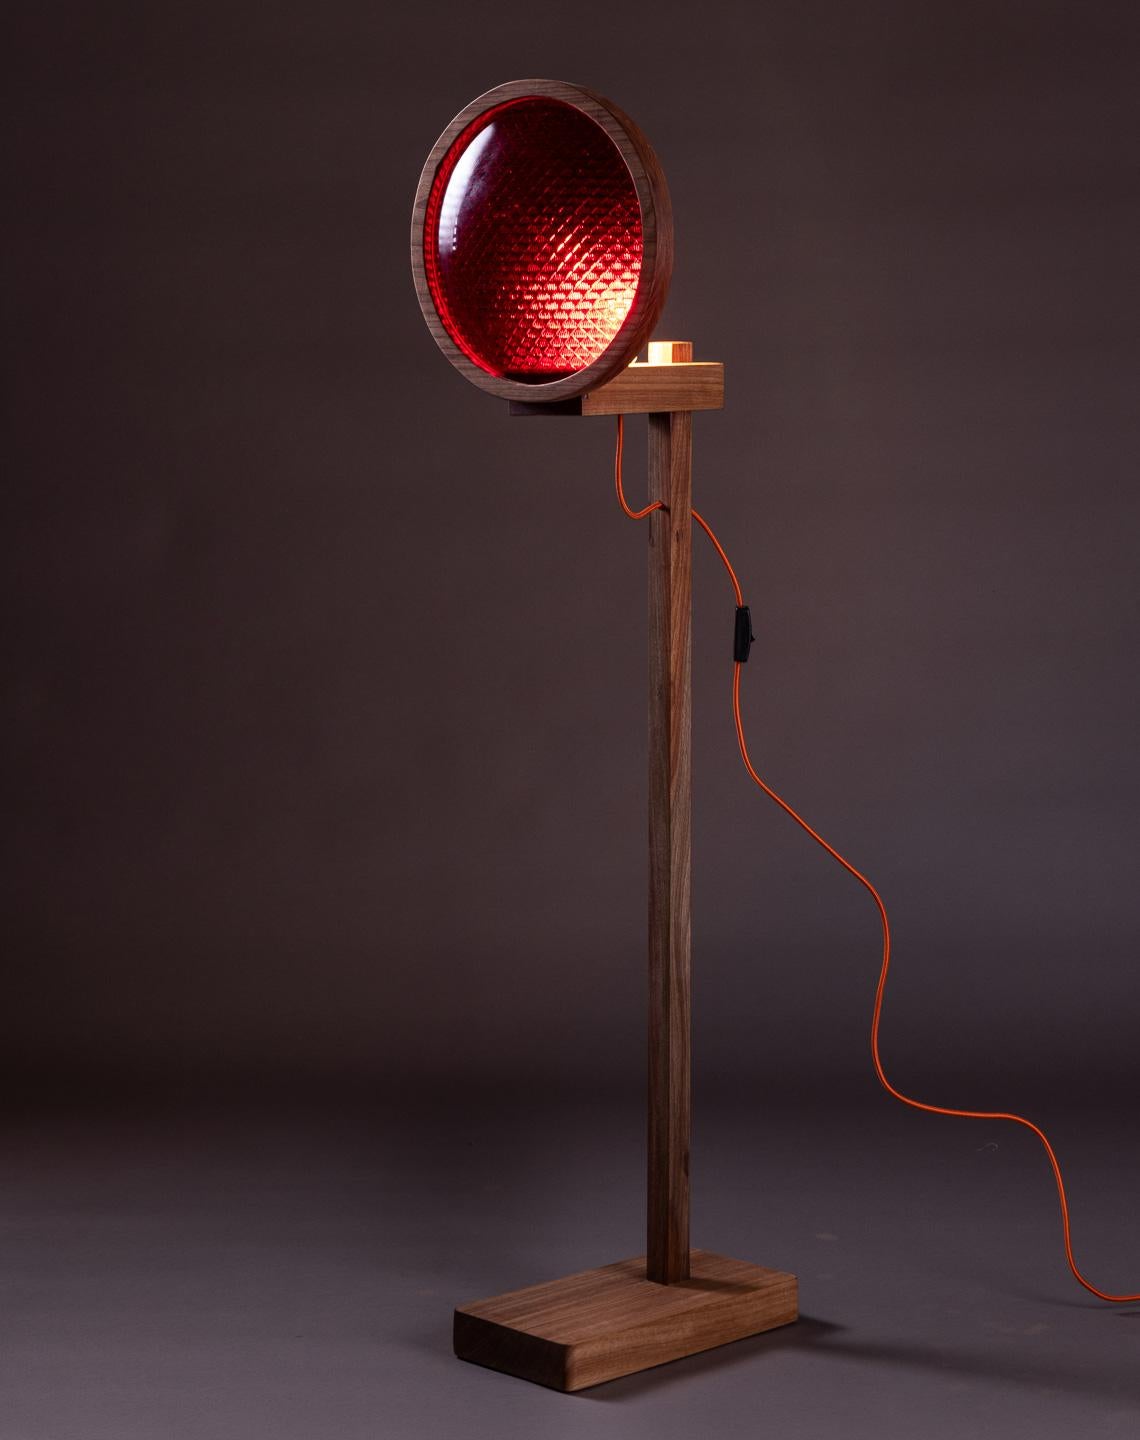 Développée en partenariat avec Cristaleria Nacional, la lampe Signal est fabriquée en bois massif de jequitibá et comporte des lentilles en verre des années 1950 qui étaient autrefois utilisées pour les feux de circulation. Il est également